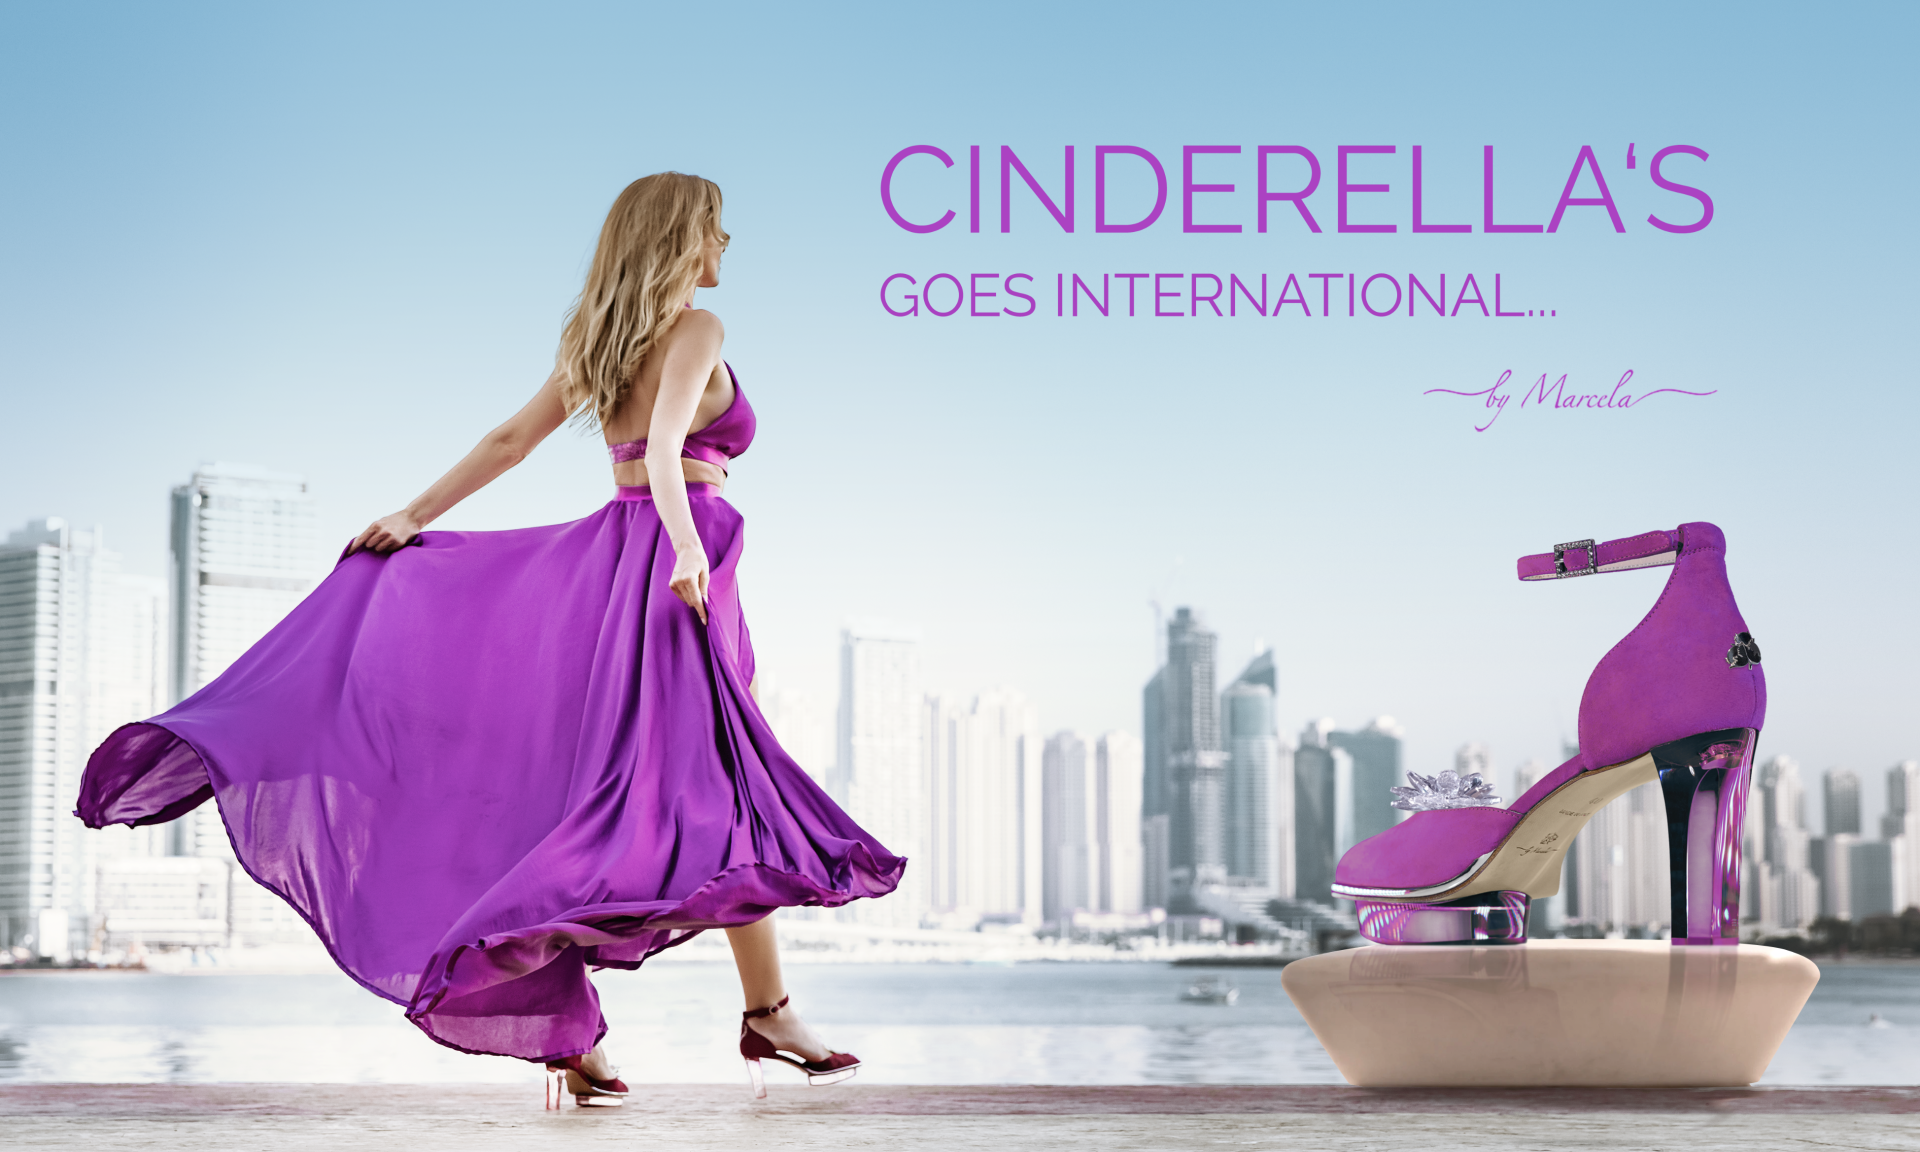 Rosa pink Cinderella Dirndl Schuhe für Oktoberfest mit transparentem high heel namens Magentas und blaues Dirndl von Astrid Söll